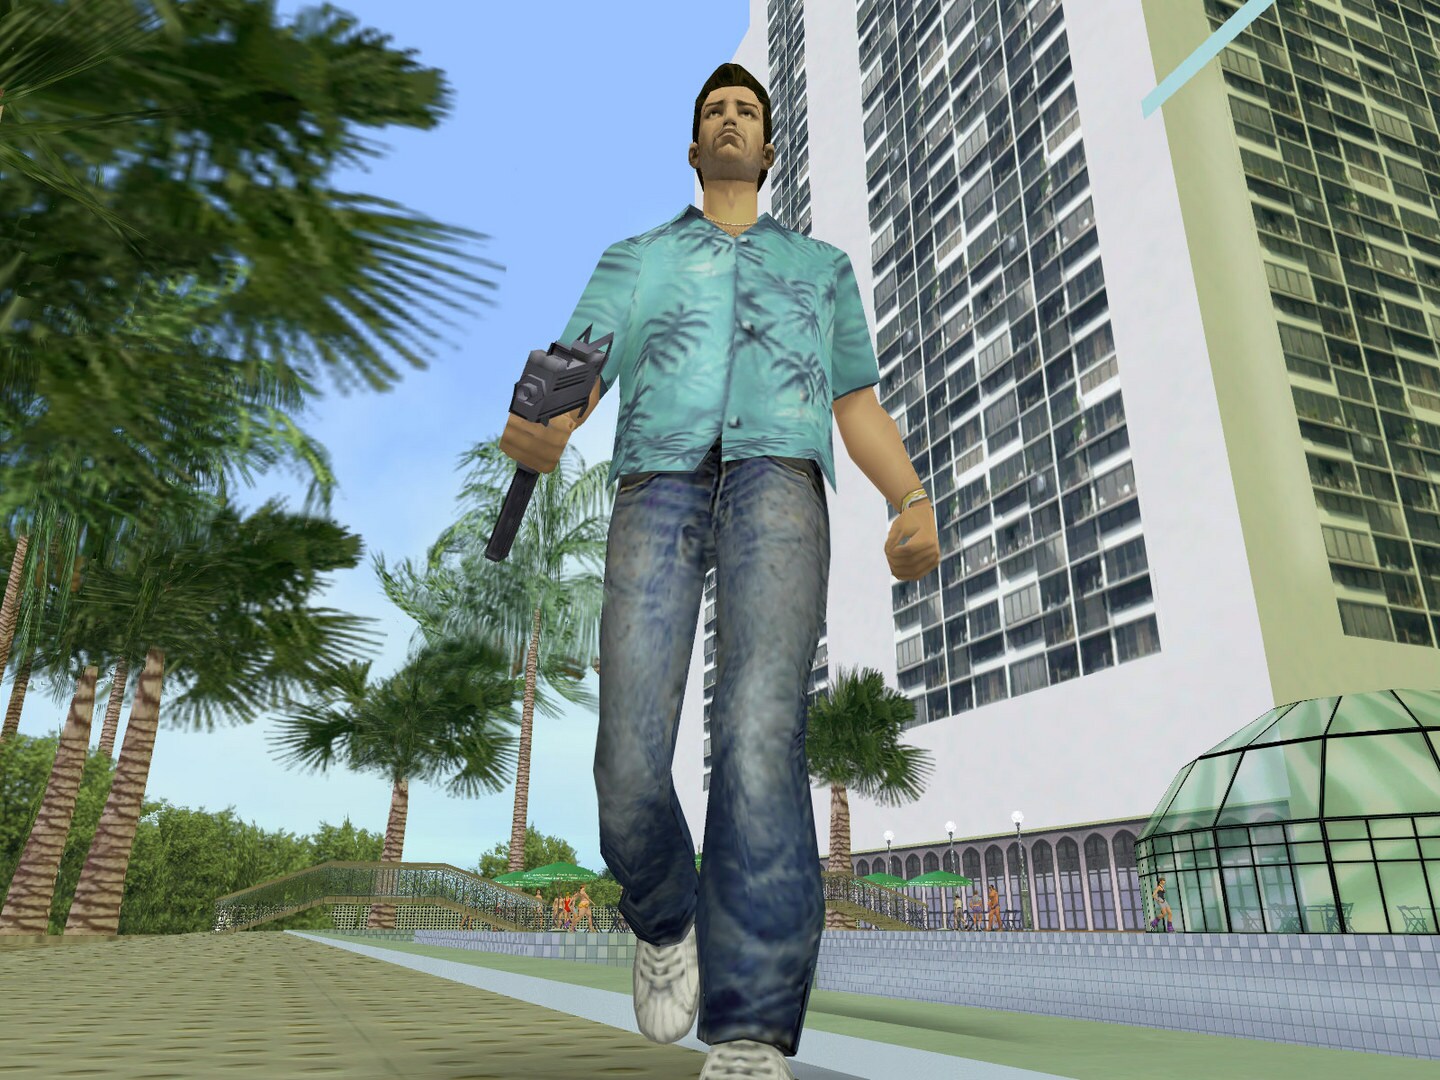 Grand Theft Auto Vice City Steam Key Global G2a Com